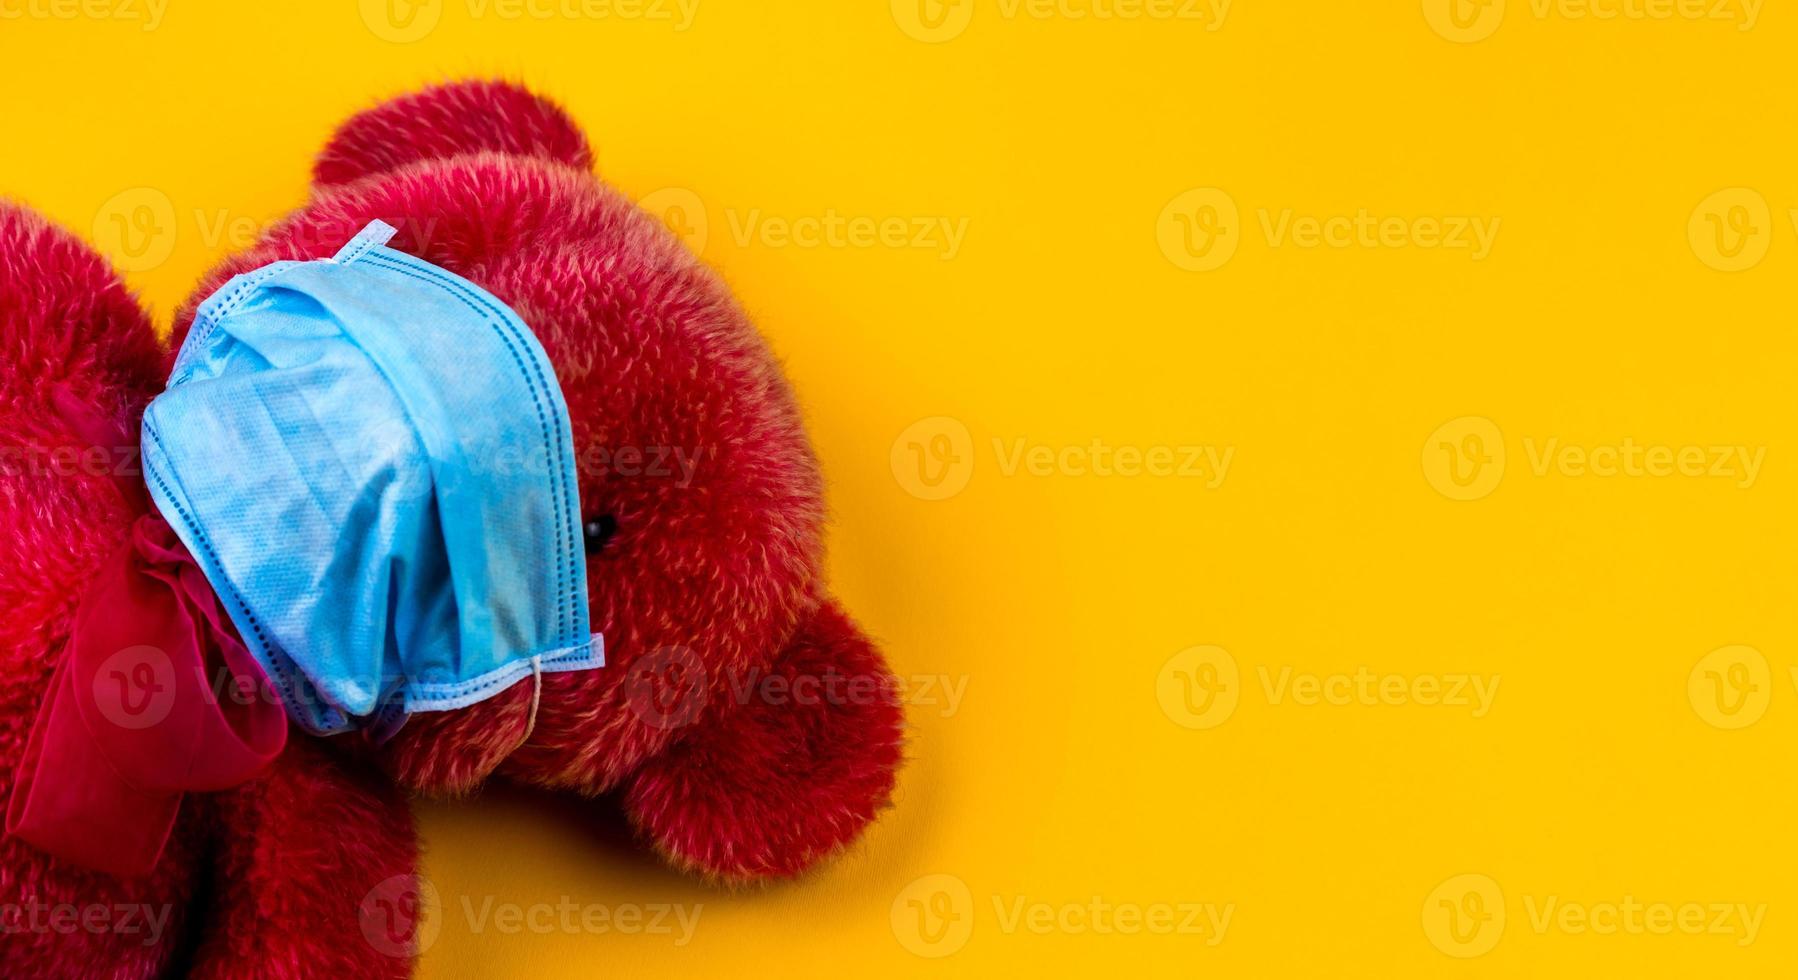 eenzame rode teddybeer in een beschermend medisch masker op een gele achtergrond foto